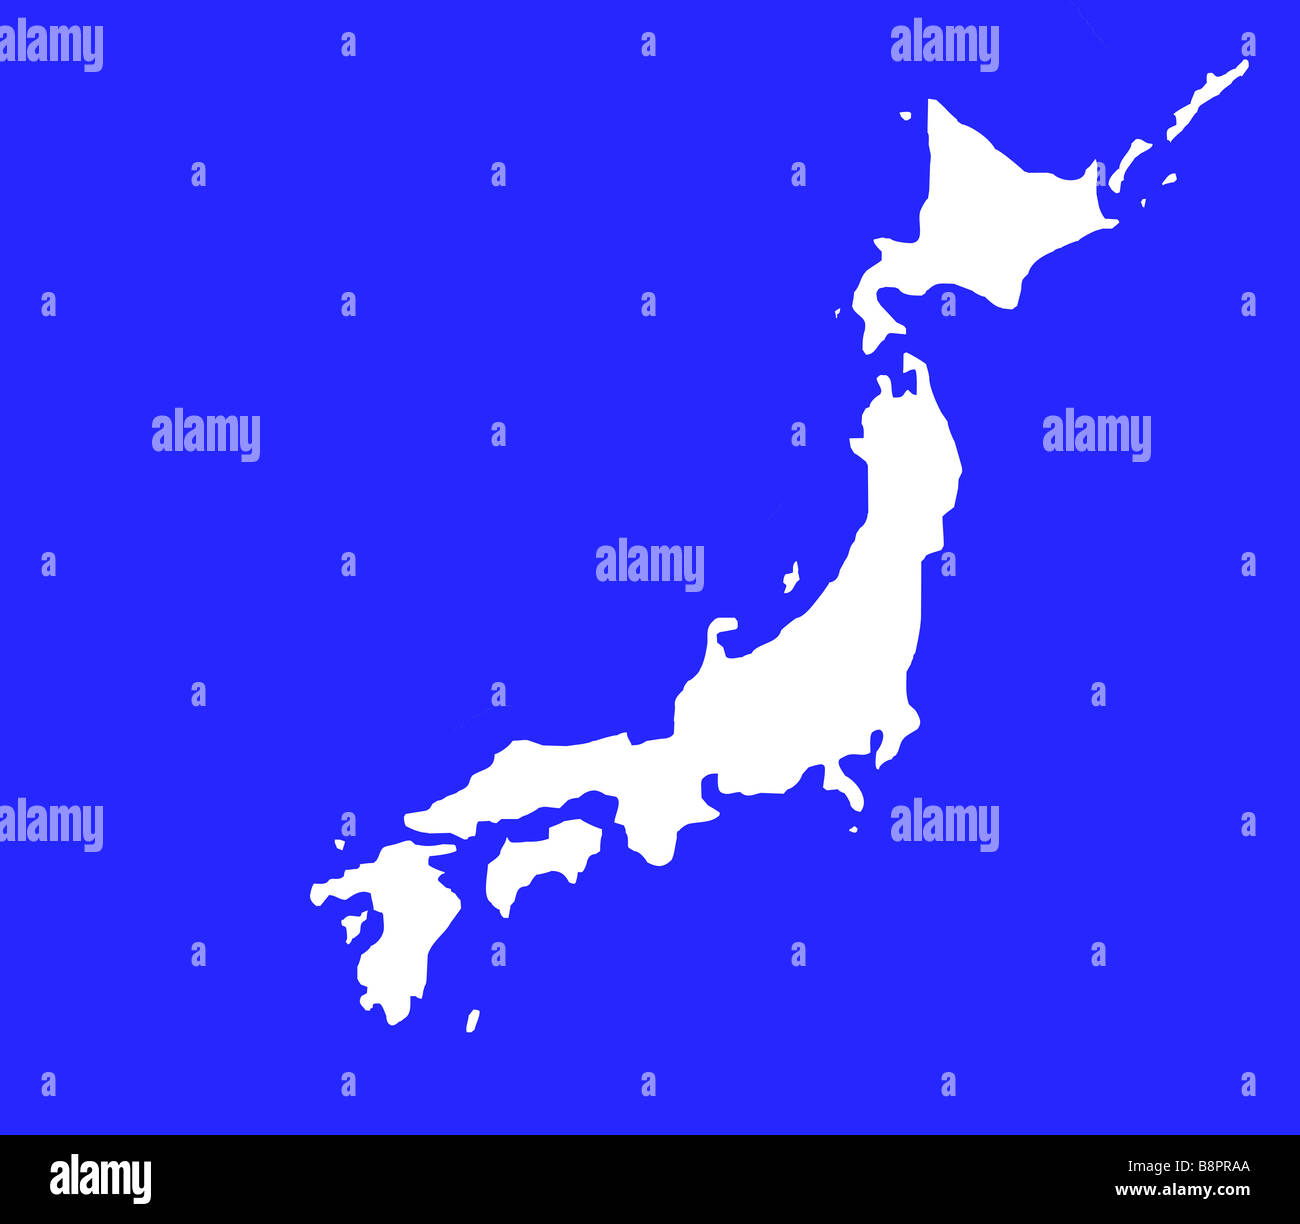 Insel von Japan Karte Umriss in weiß auf blauem Hintergrund mit Beschneidungspfad isoliert Stockfoto